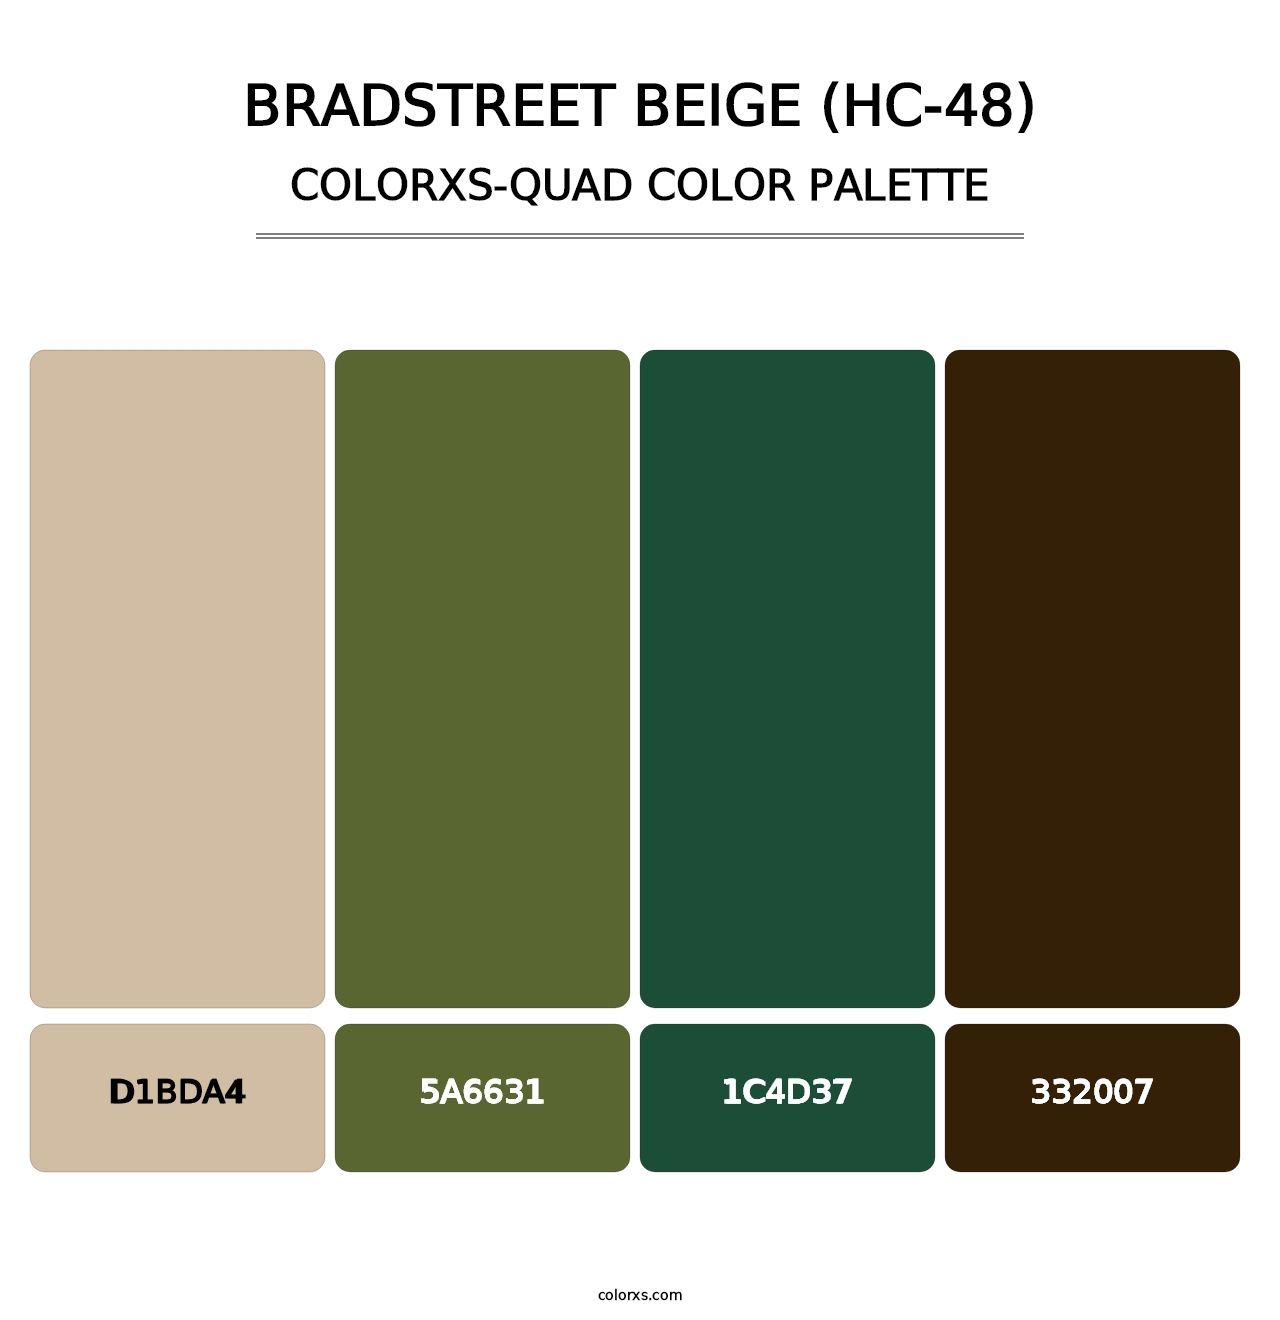 Bradstreet Beige (HC-48) - Colorxs Quad Palette